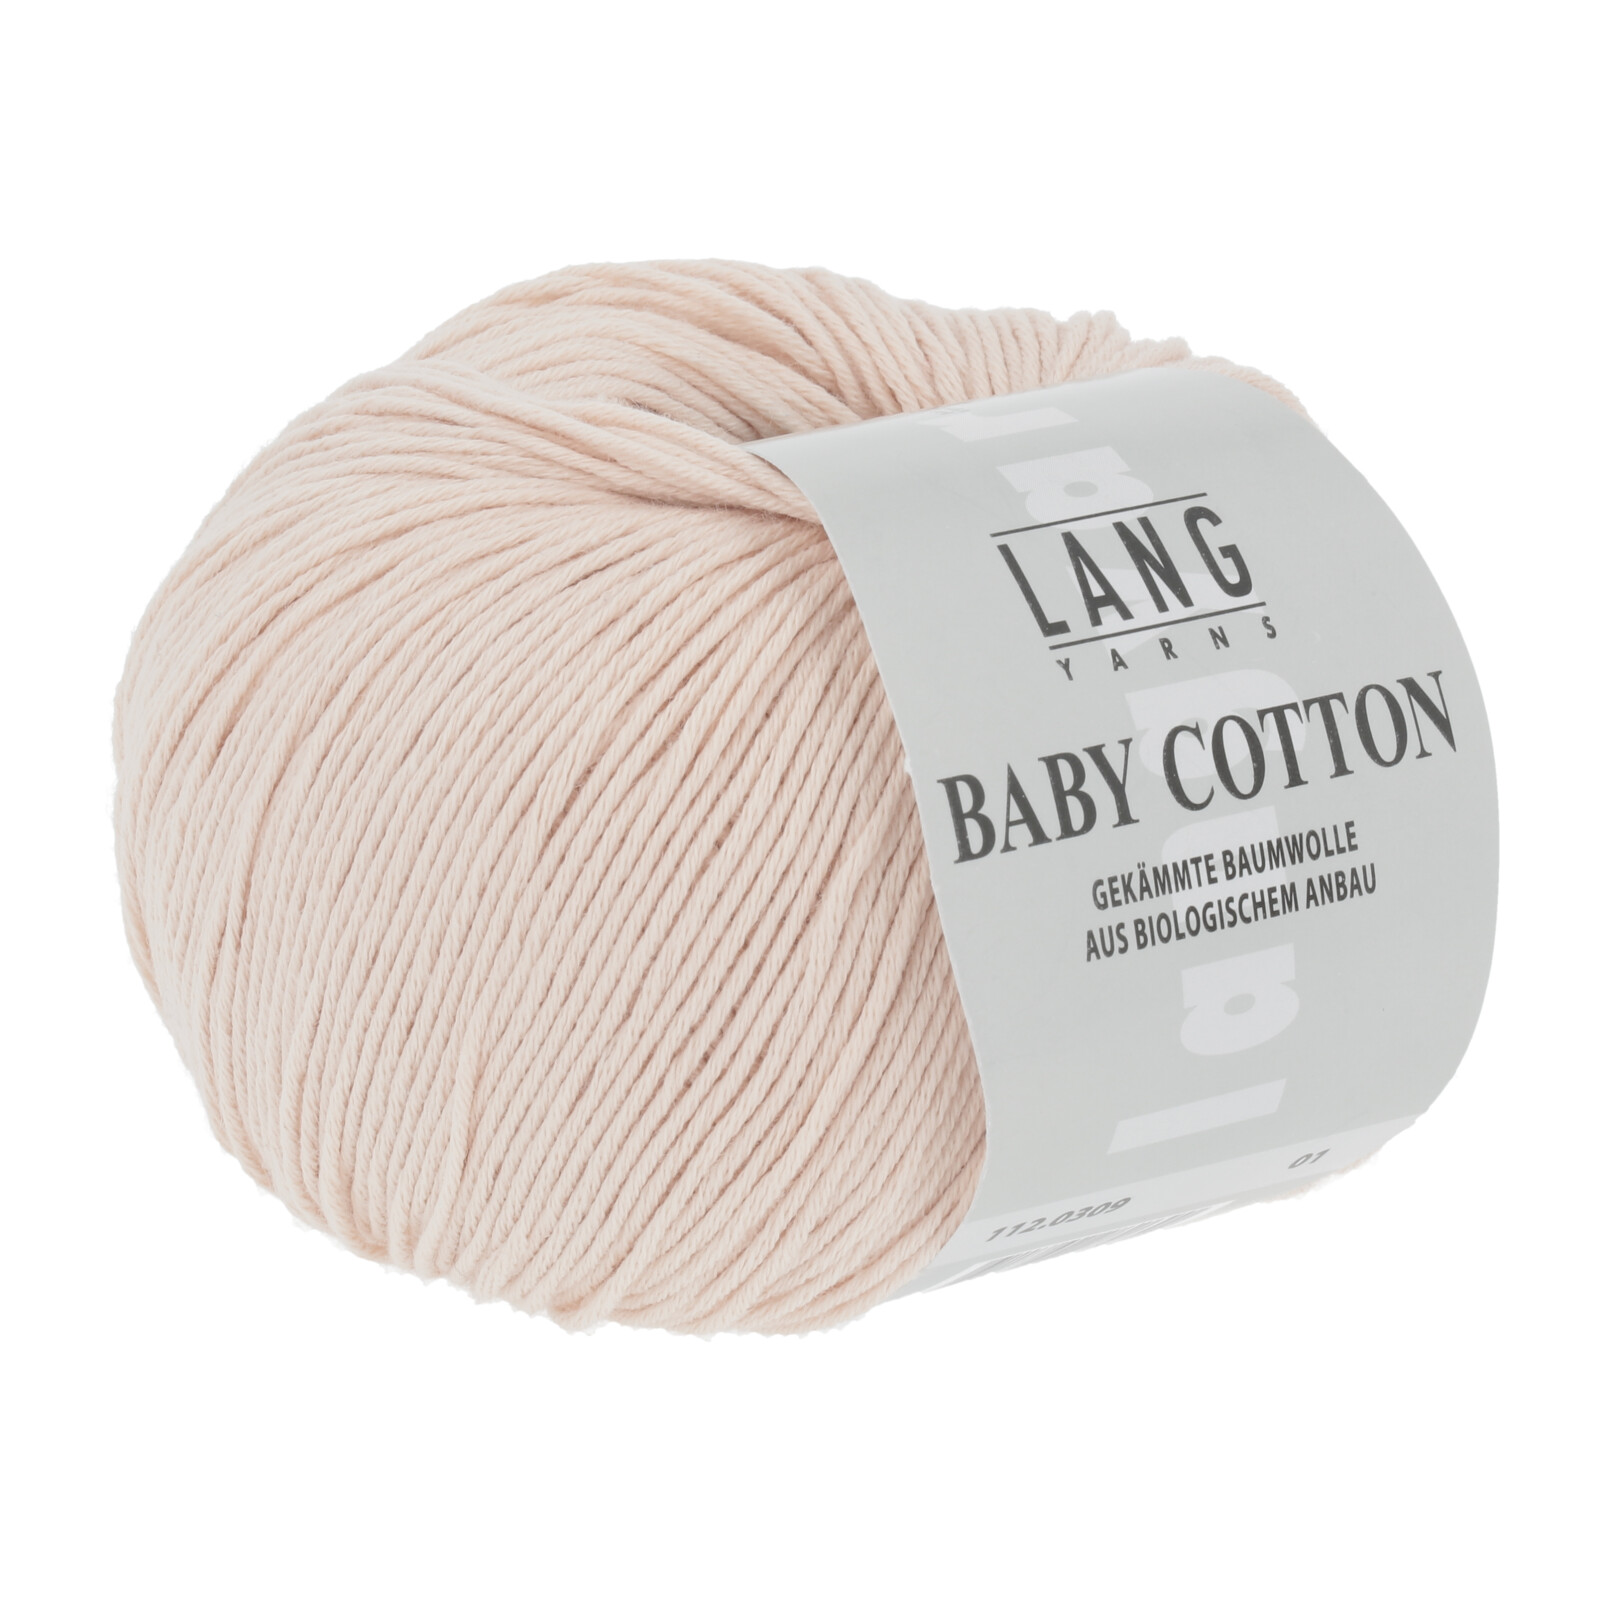 Baby Cotton coloris 0309 Lang Yarns